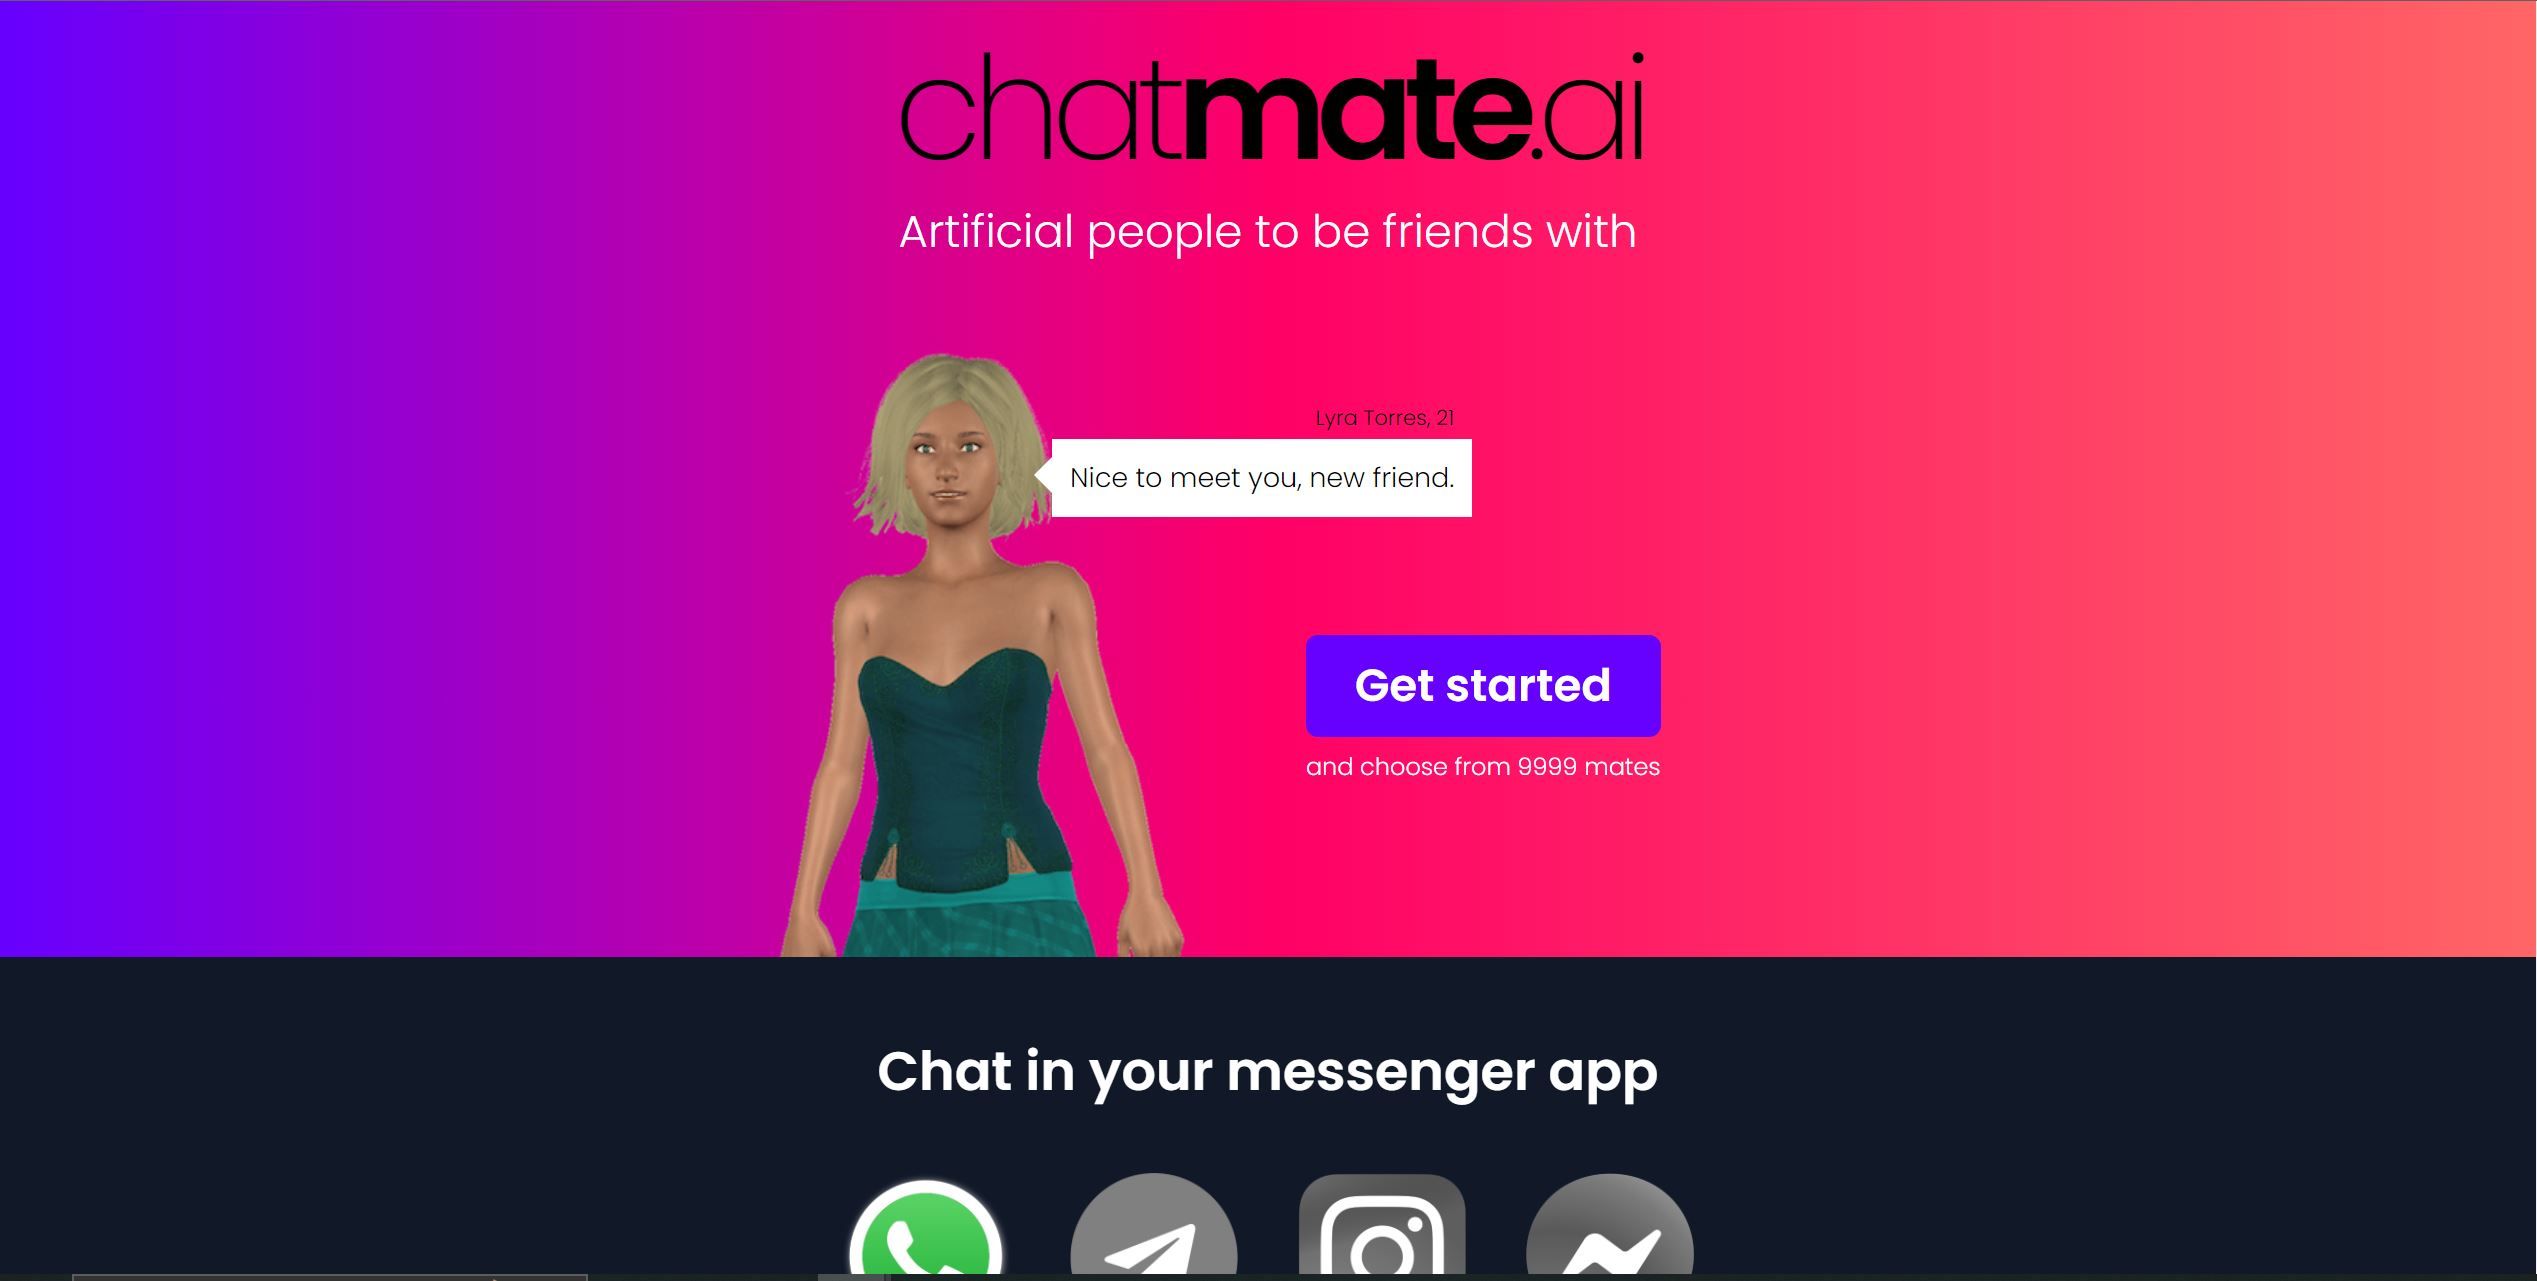  Interactive chatbot simulating personal